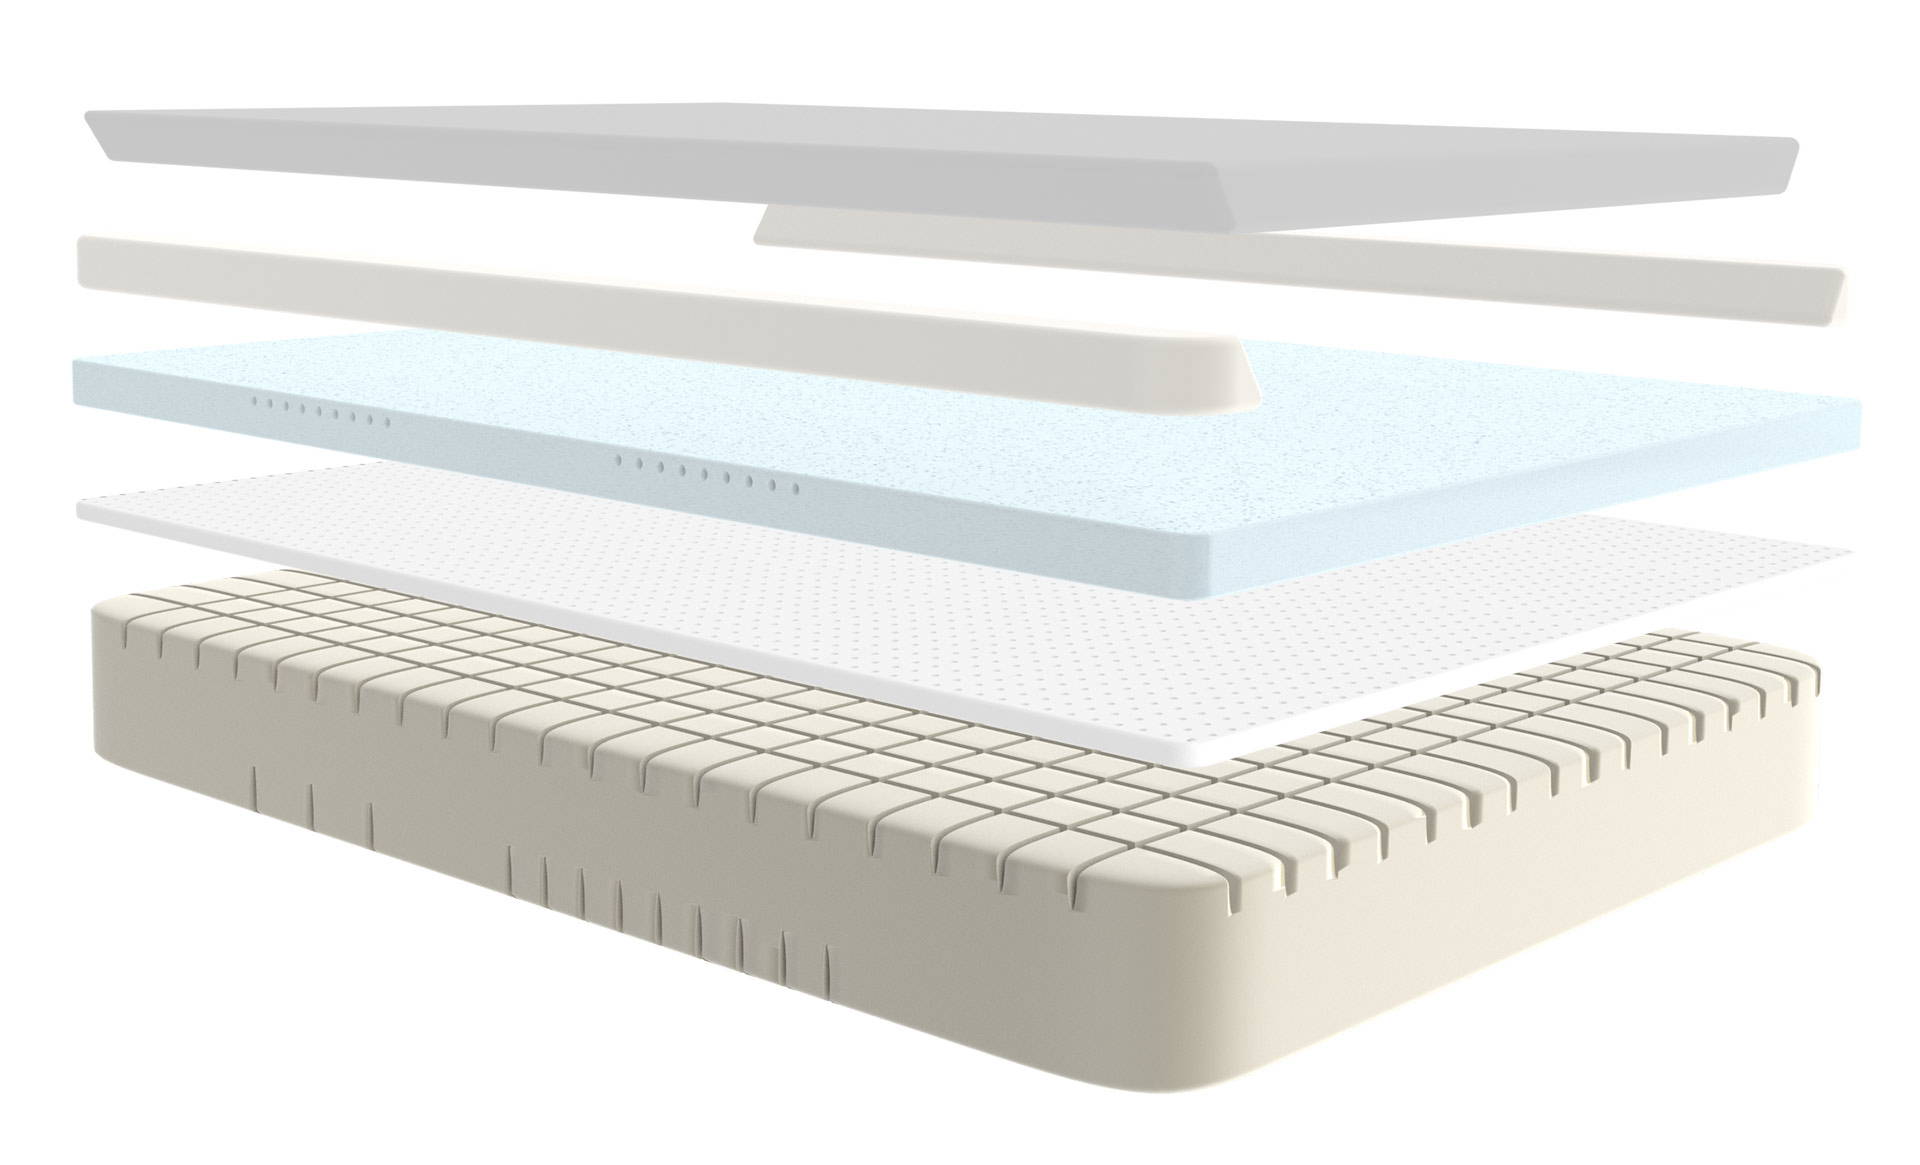 mattress layers - featuring flex-flow base foam